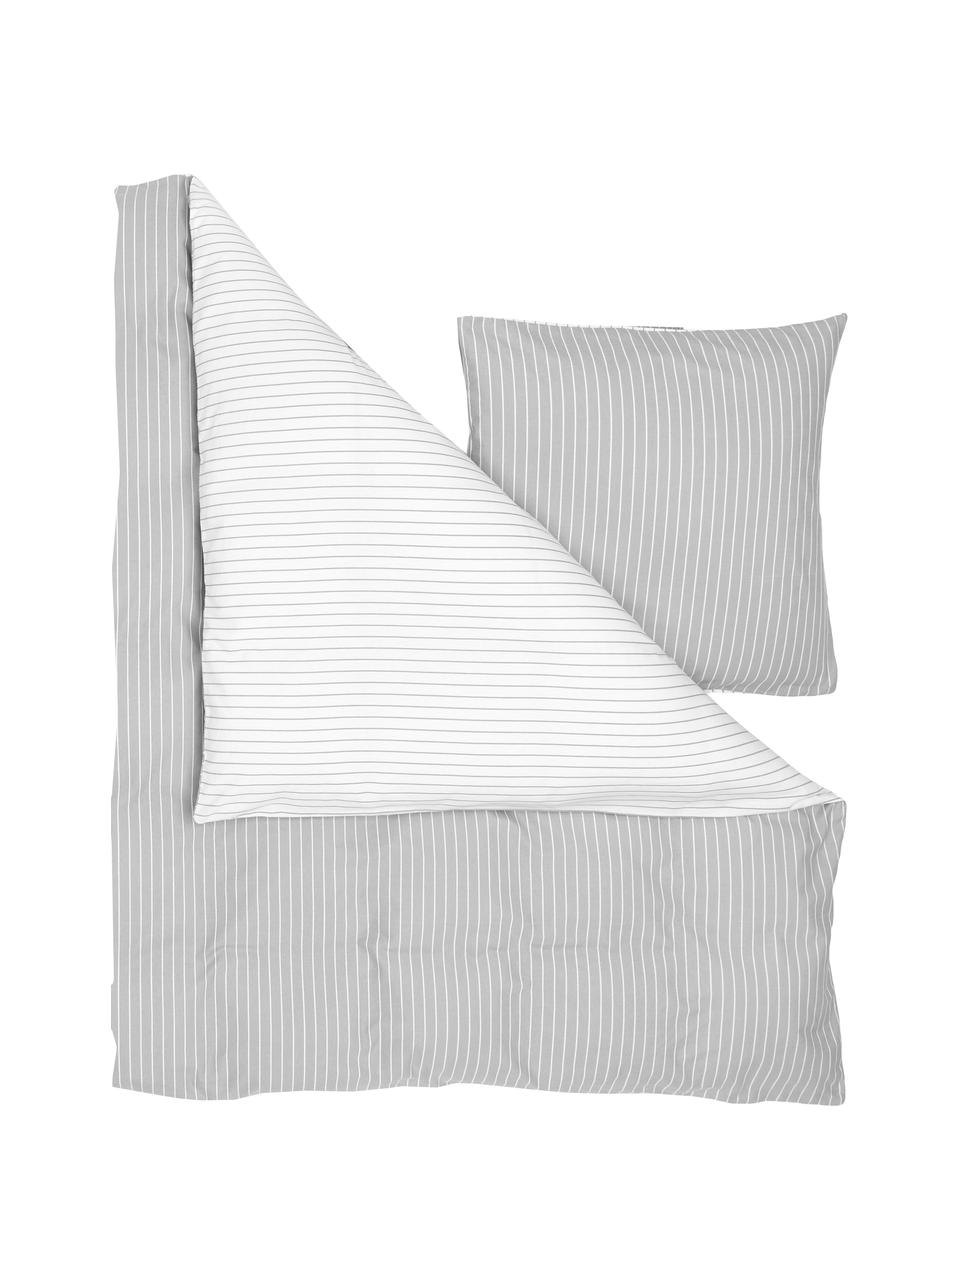 Pruhovaná flanelová obojstranná posteľná bielizeň Talia, Sivá, biela, 135 x 200 cm + 1 vankúš 80 x 80 cm